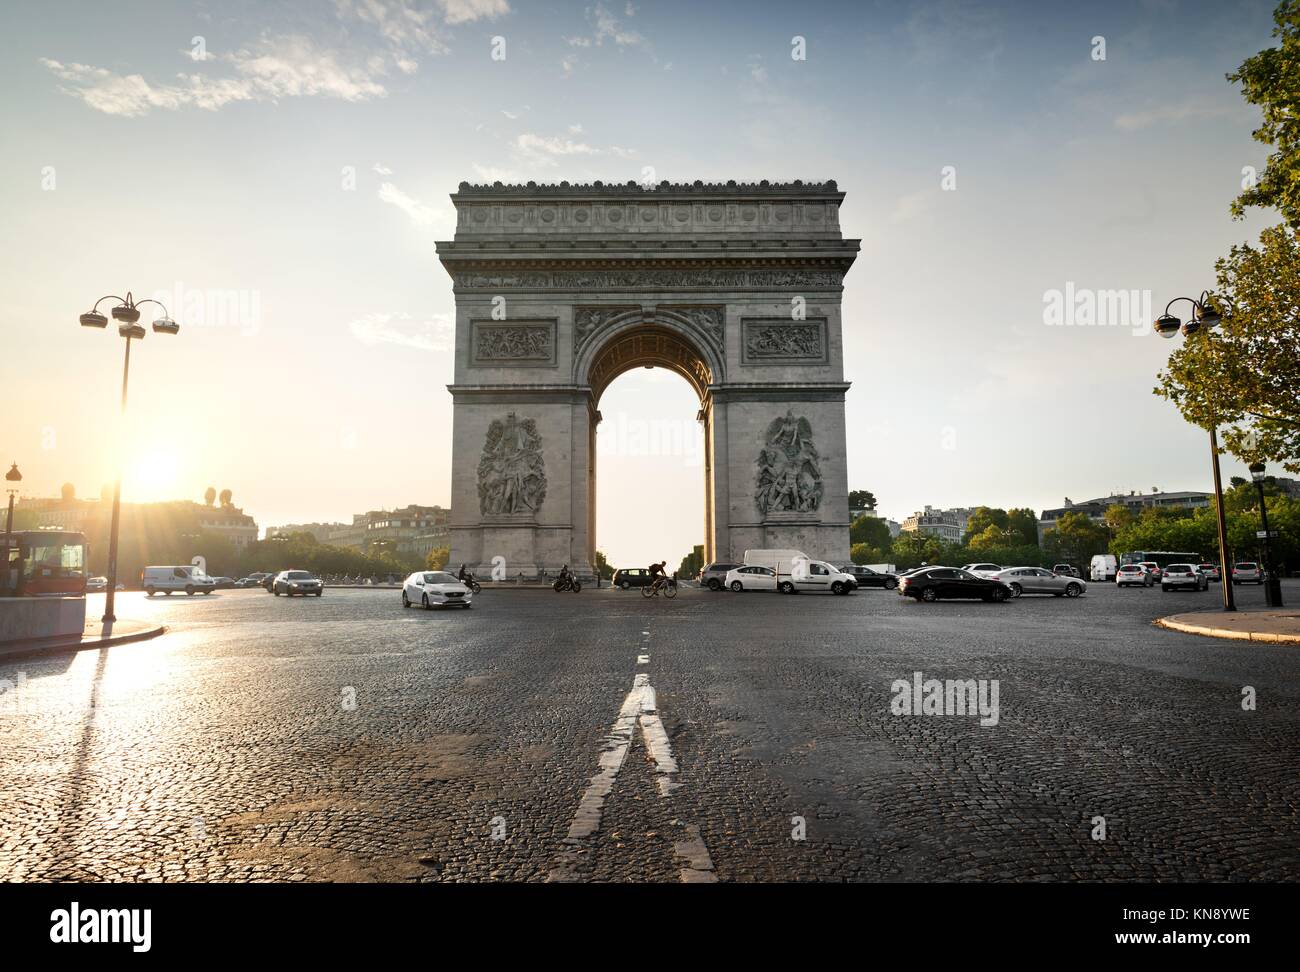 La grande épicerie de paris hi-res stock photography and images - Alamy